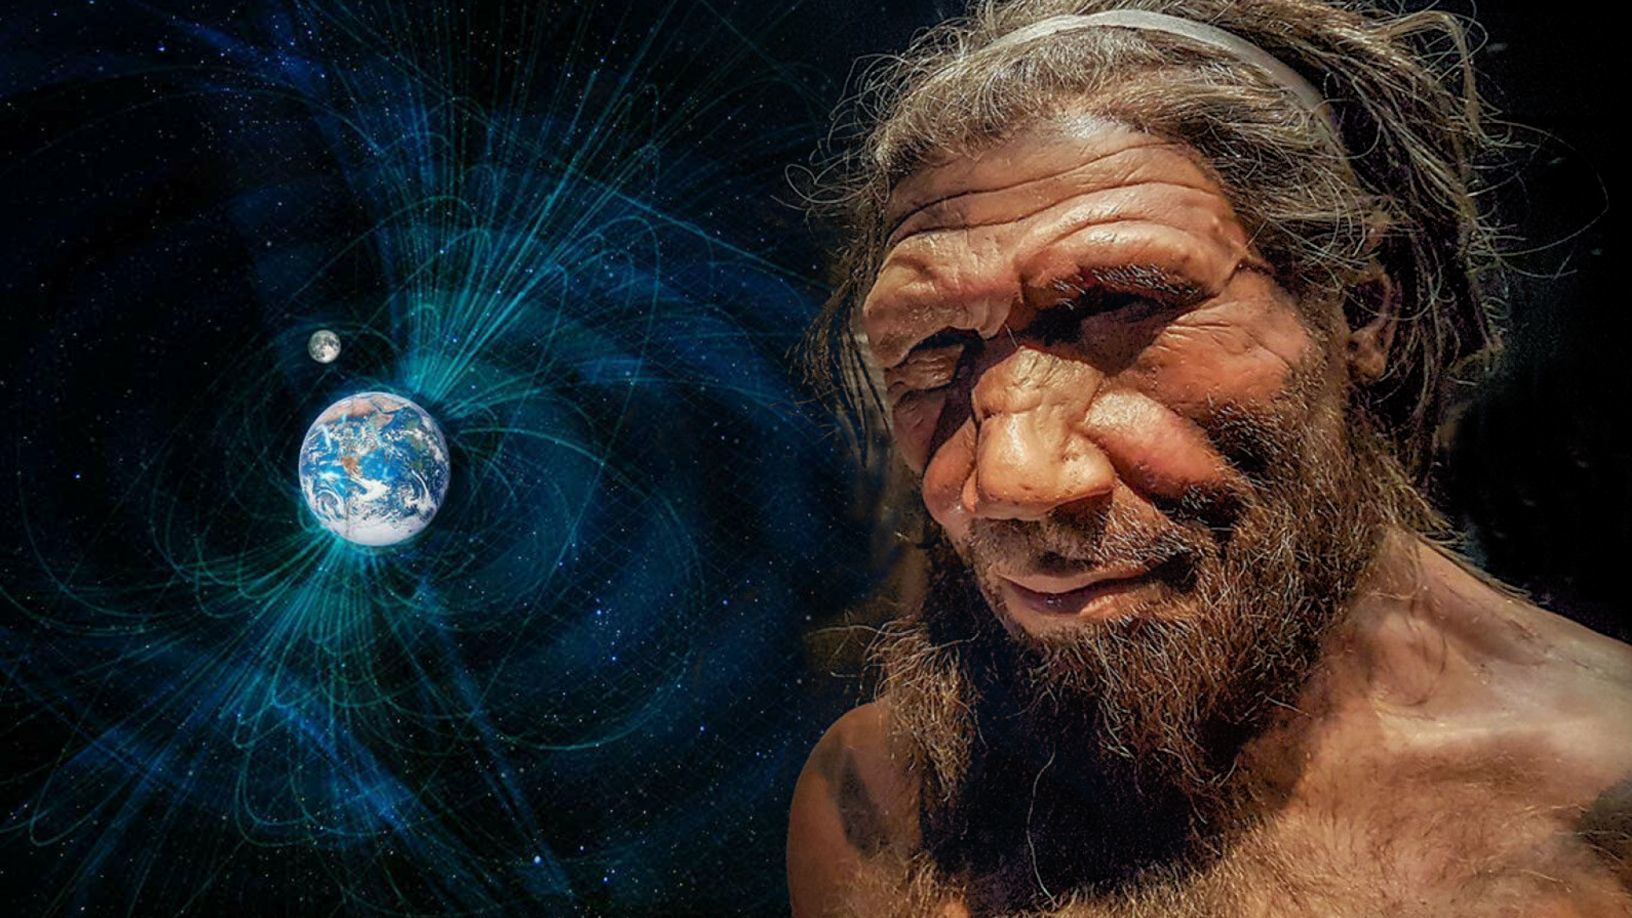 Mwisho wa Neanderthals unaosababishwa na kupindukia kwa uwanja wa sumaku wa Dunia miaka 42,000 iliyopita, utafiti unaonyesha 1